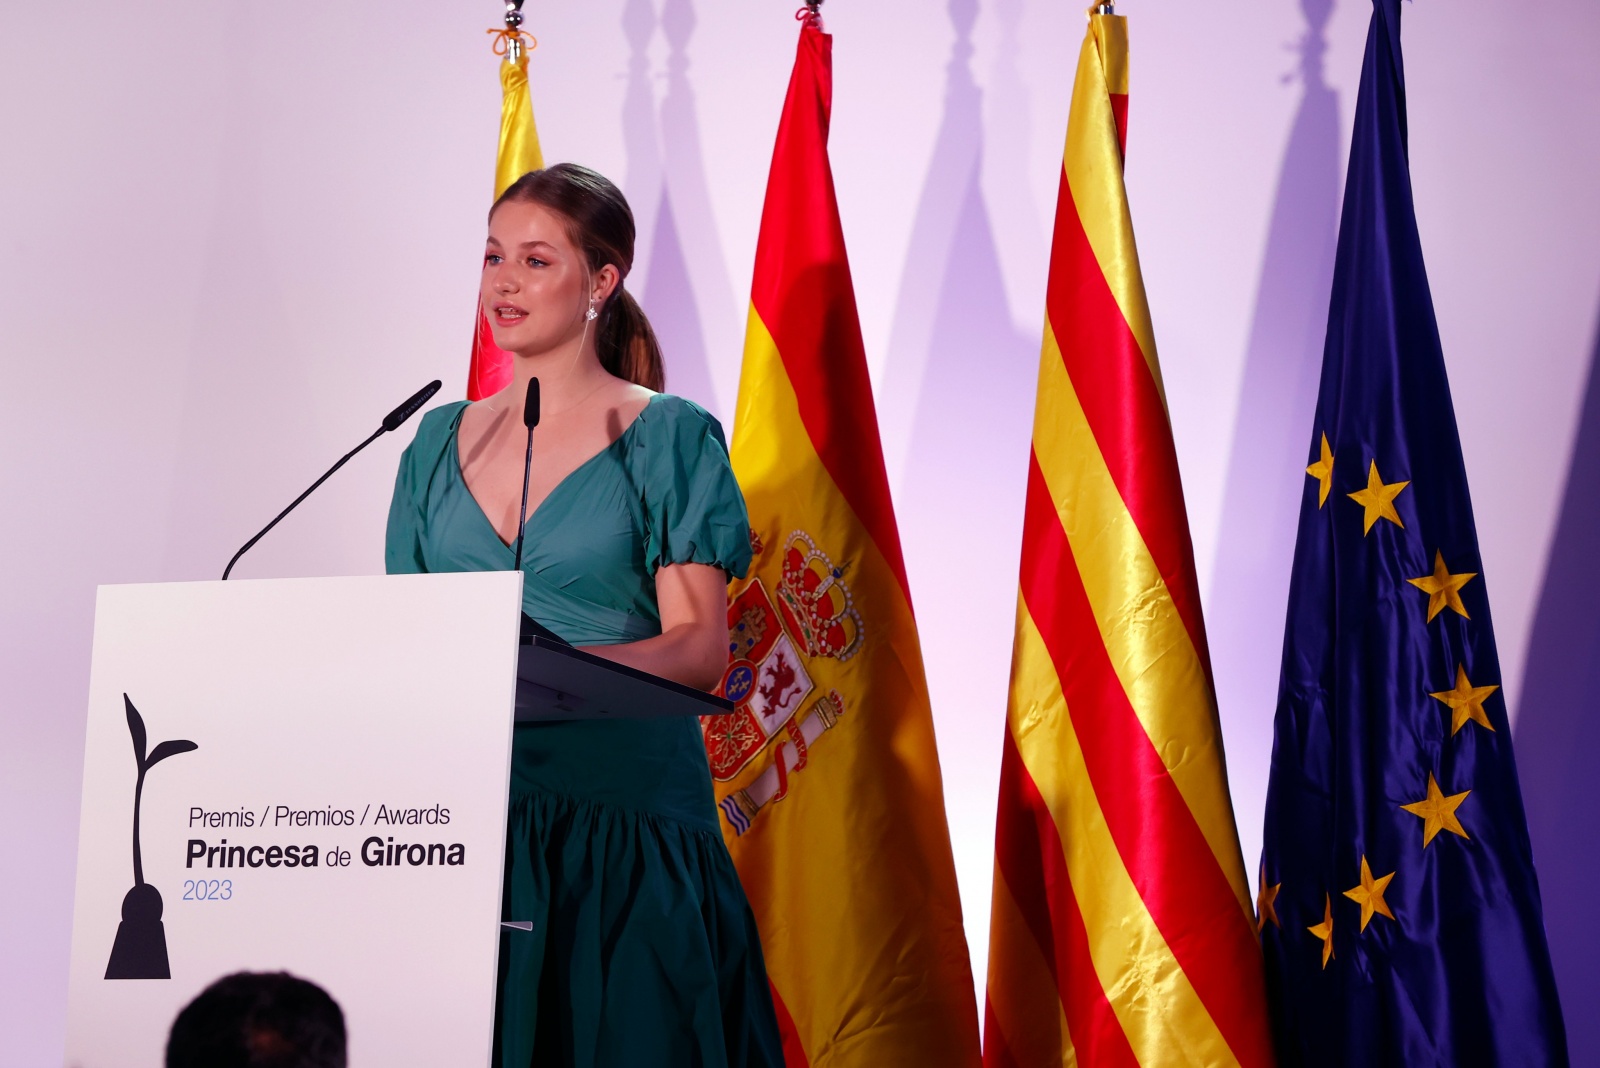 O discurso da princesa Leonor nos prémios Girona